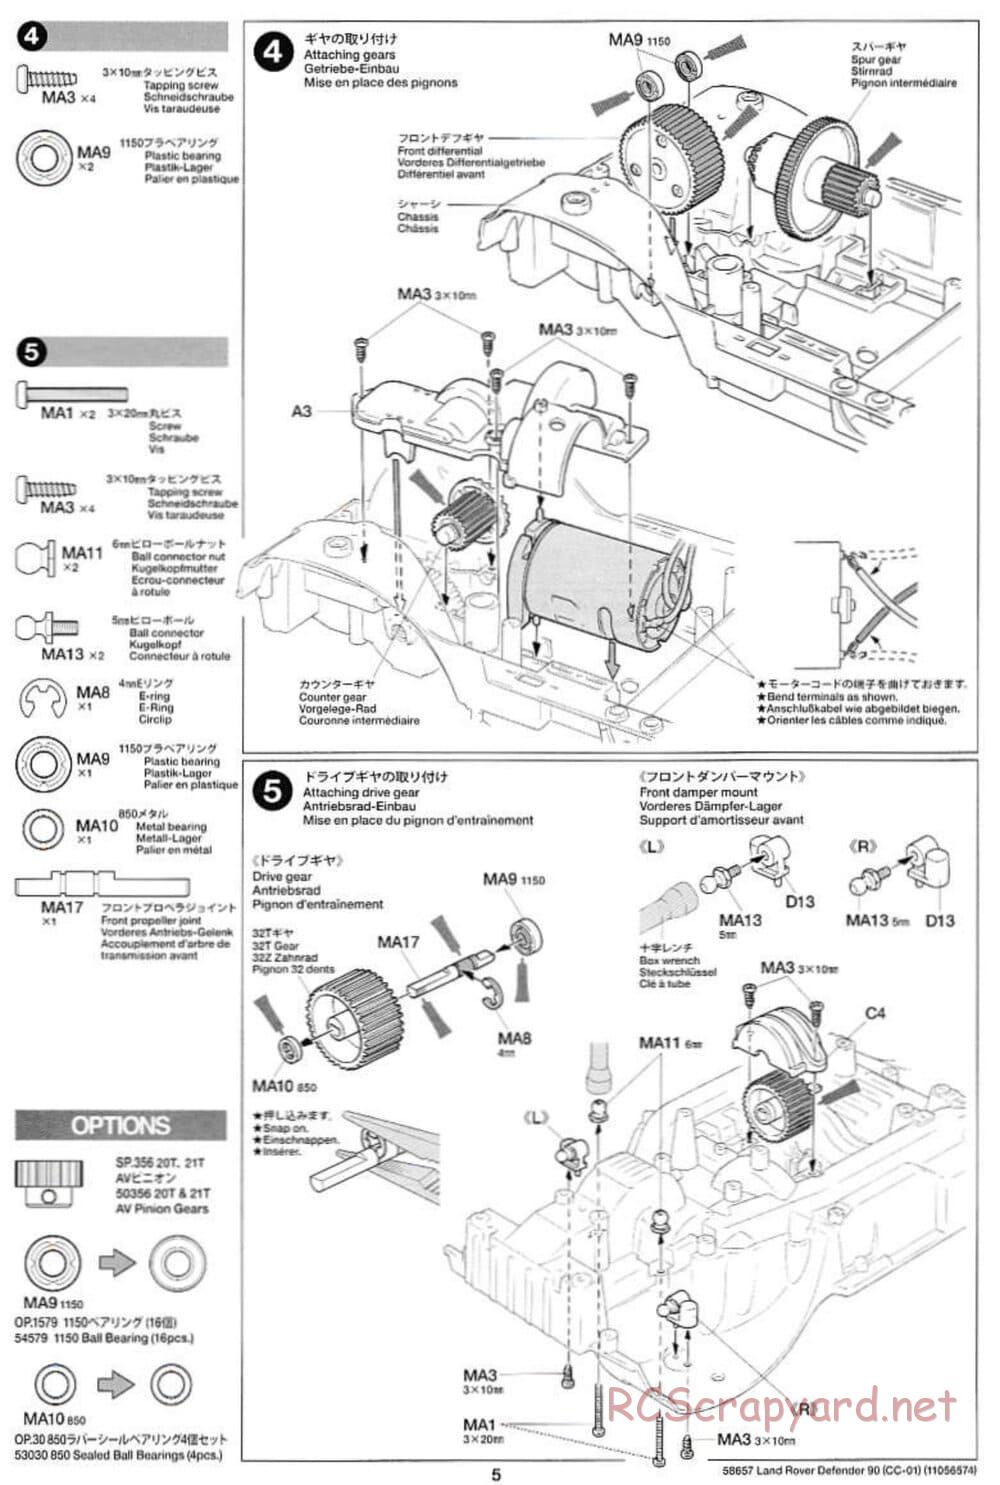 Tamiya - Land Rover Defender 90 - CC-01 Chassis - Manual - Page 5